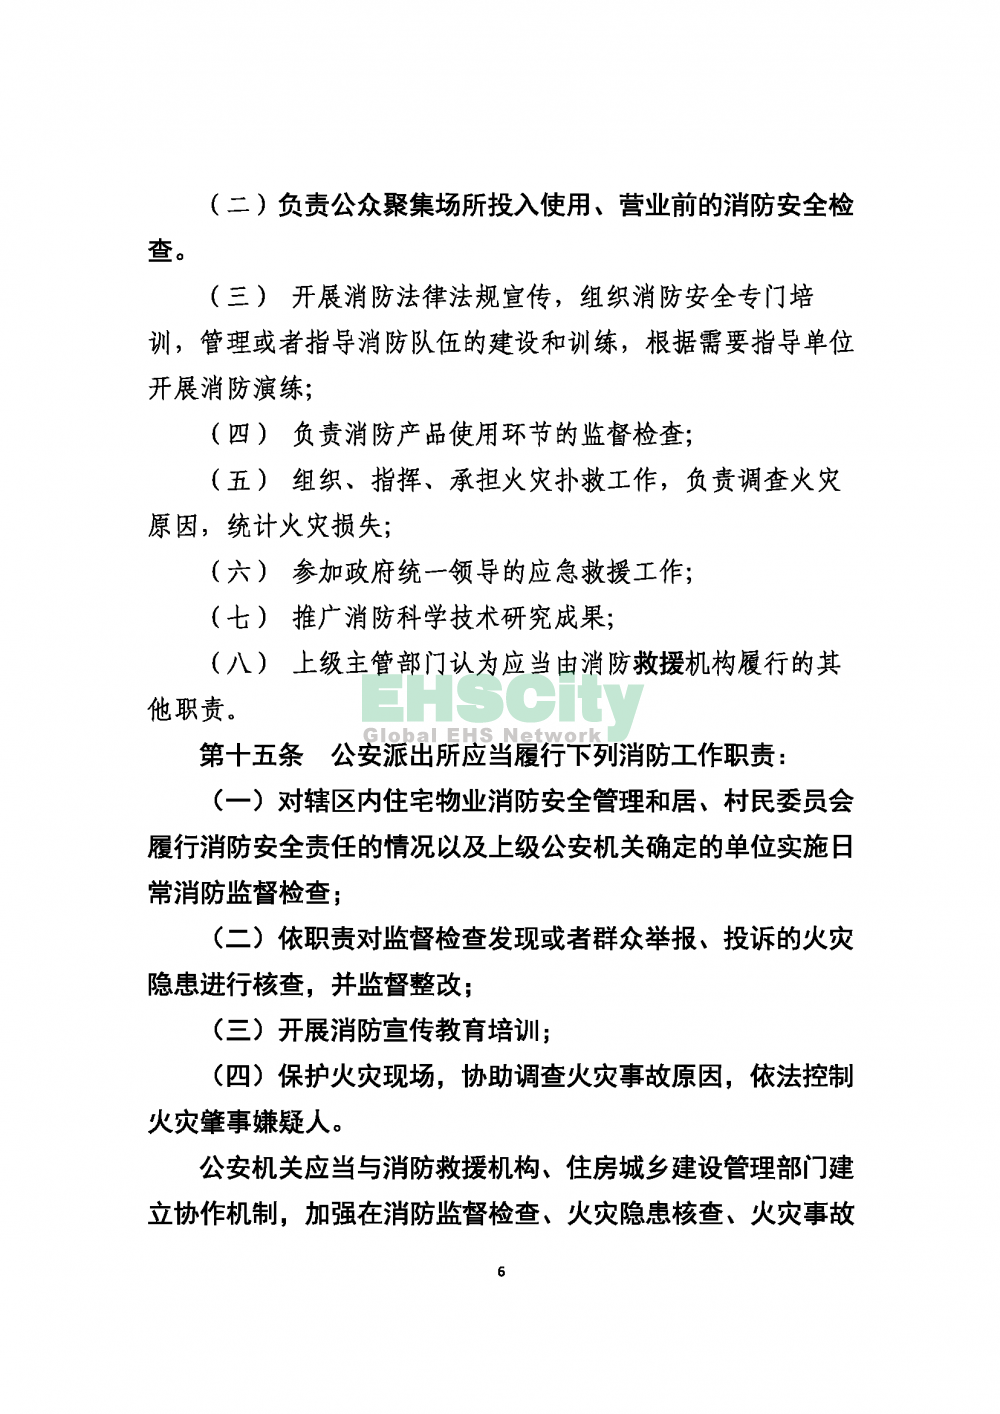 2020版上海消防条例_页面_06